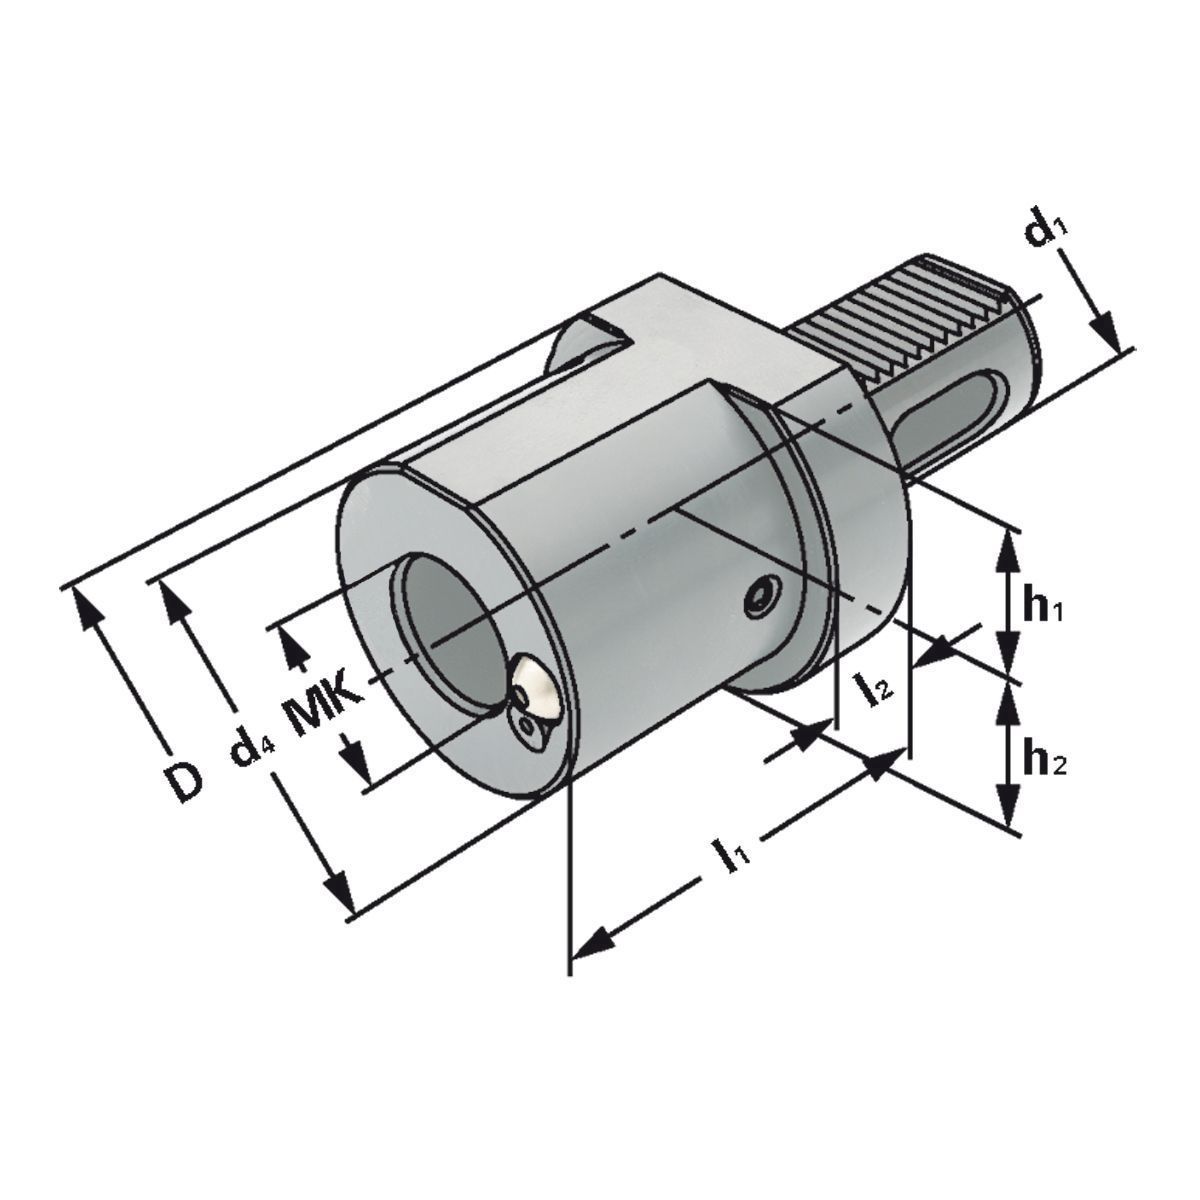 MK-Bohrerhalter F1-40xMK4 DIN 69880 (ISO 10889)